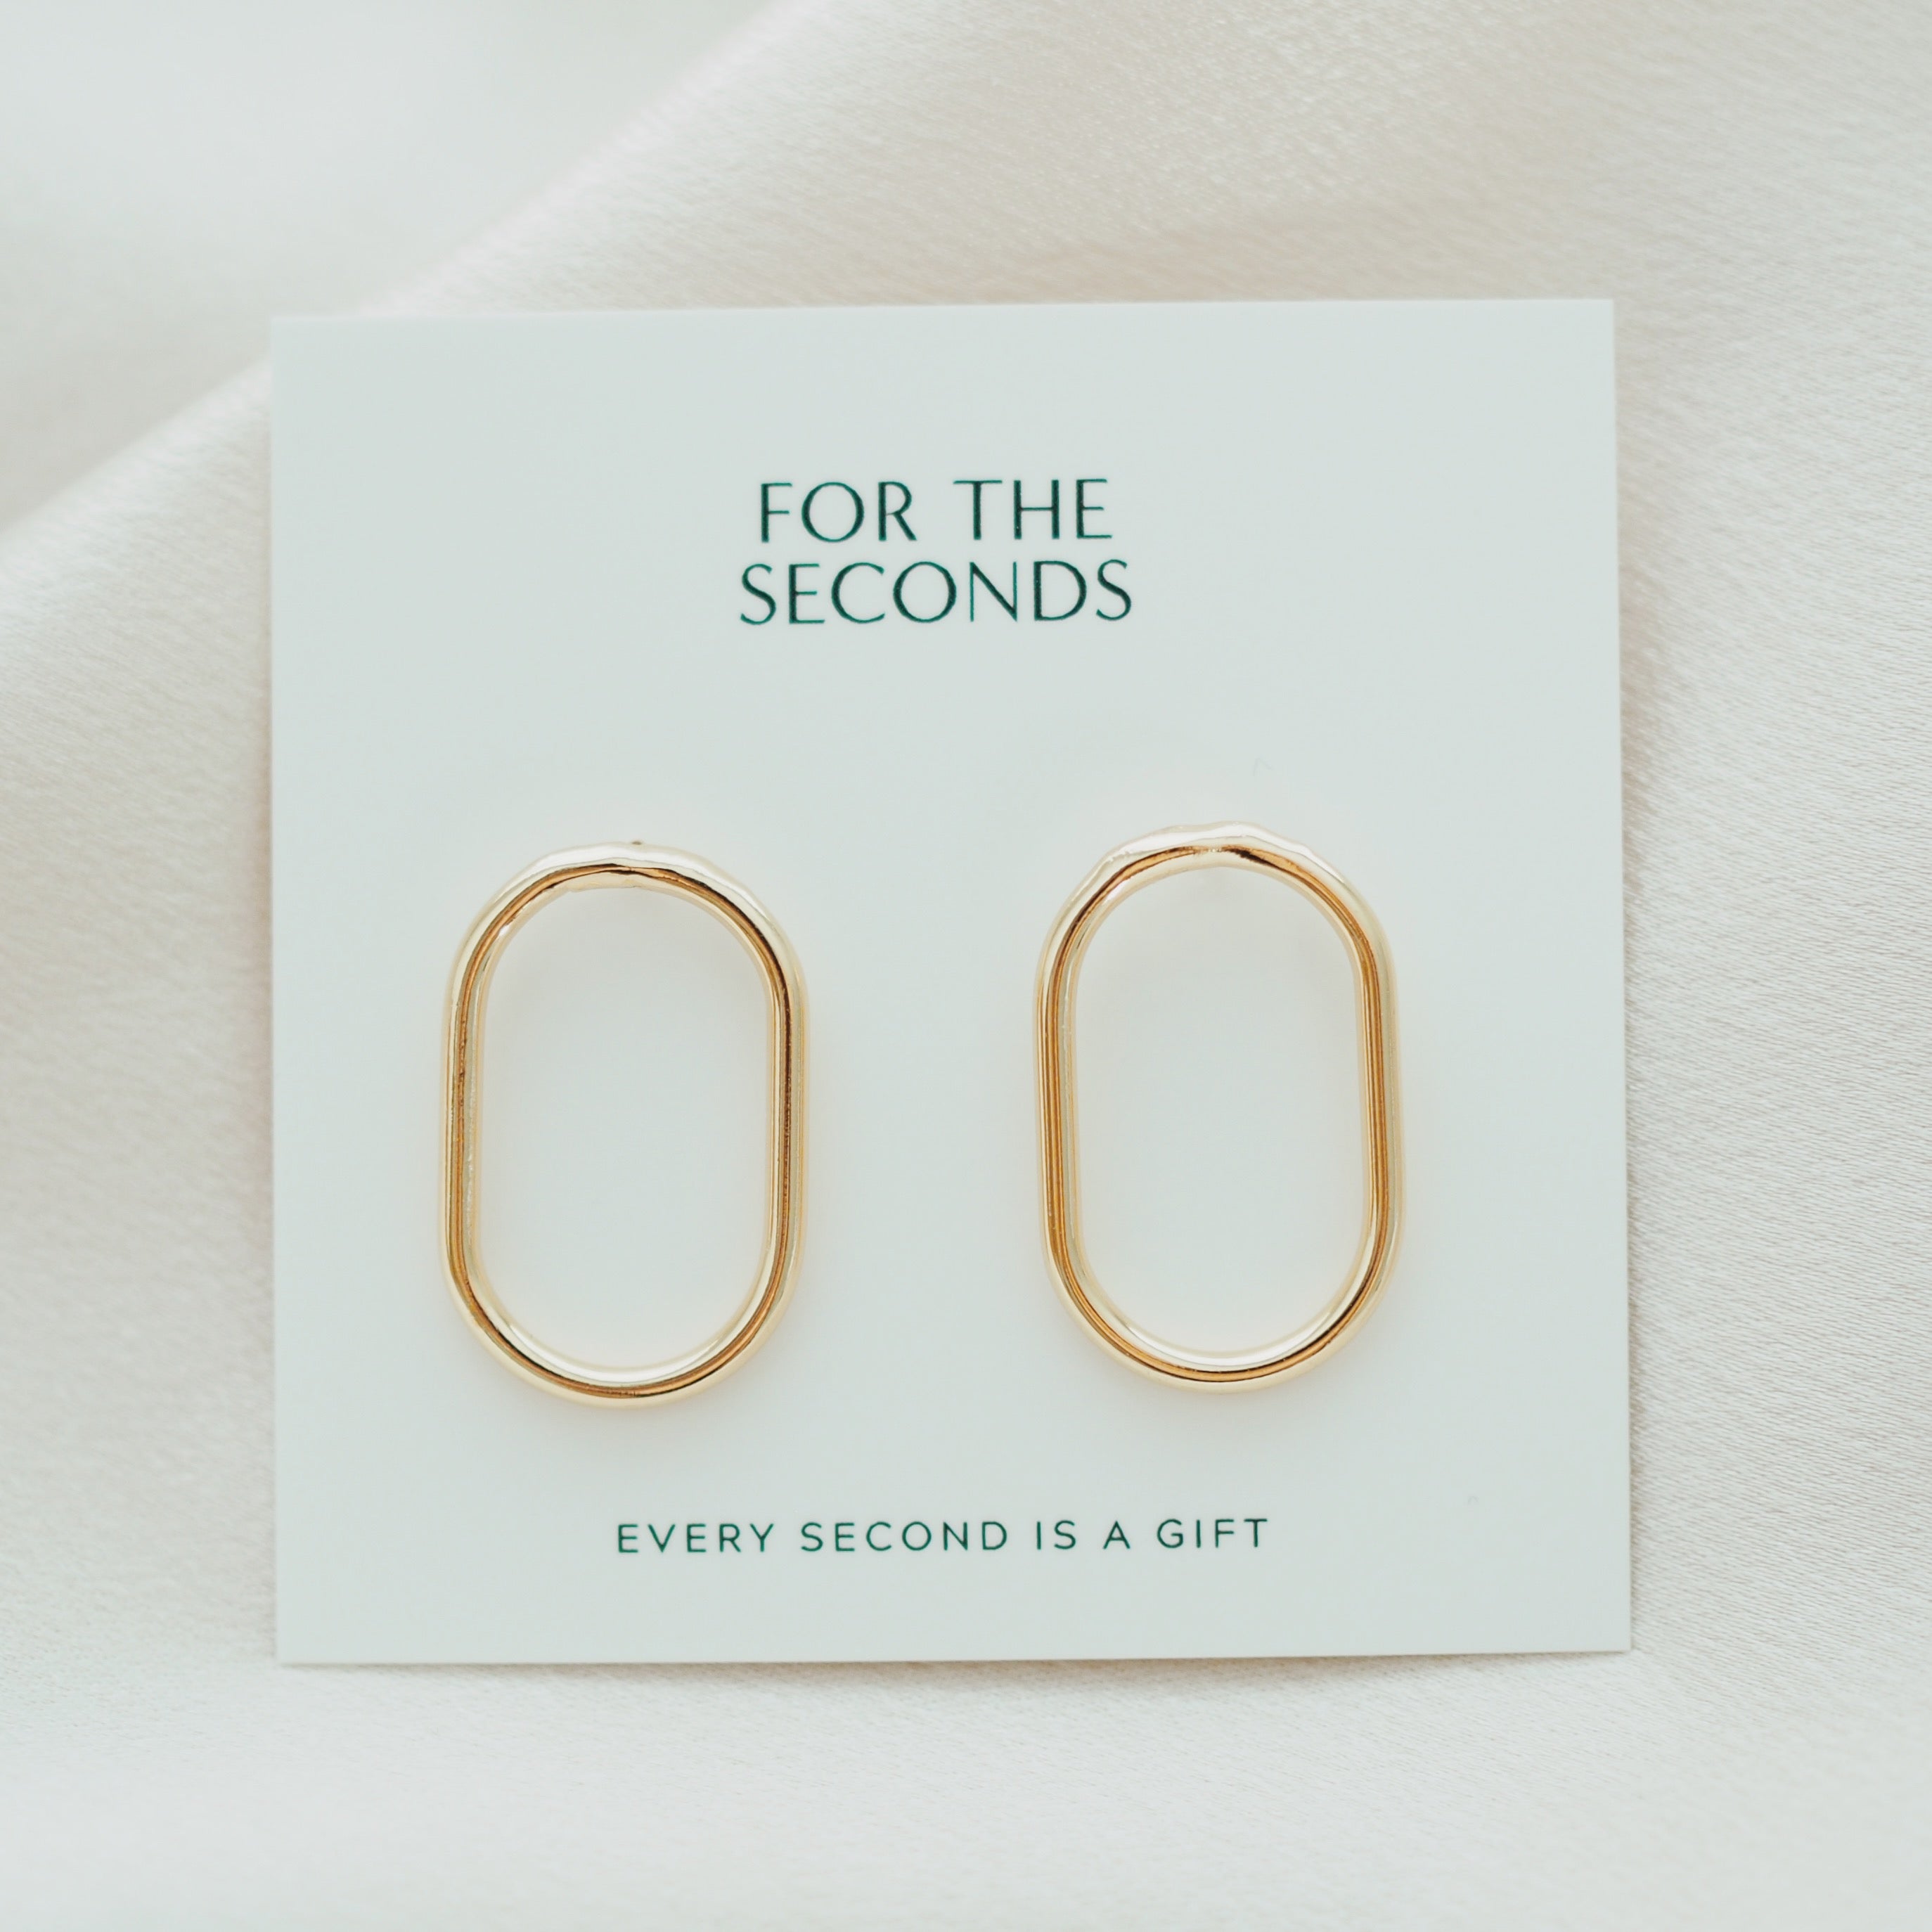 journey earrings